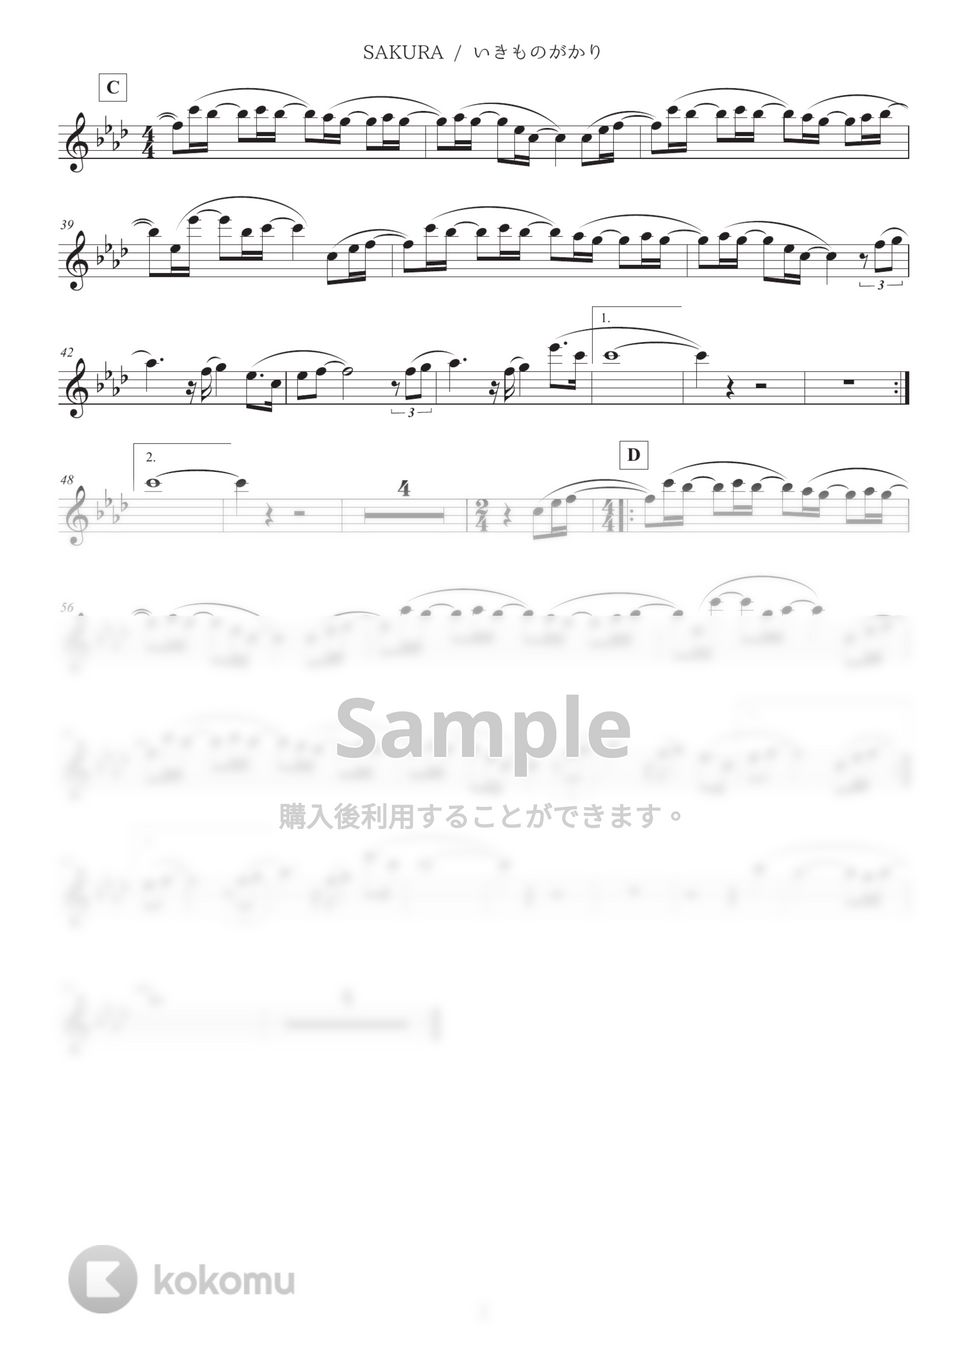 いきものがかり - SAKURA (in C) by Sumika